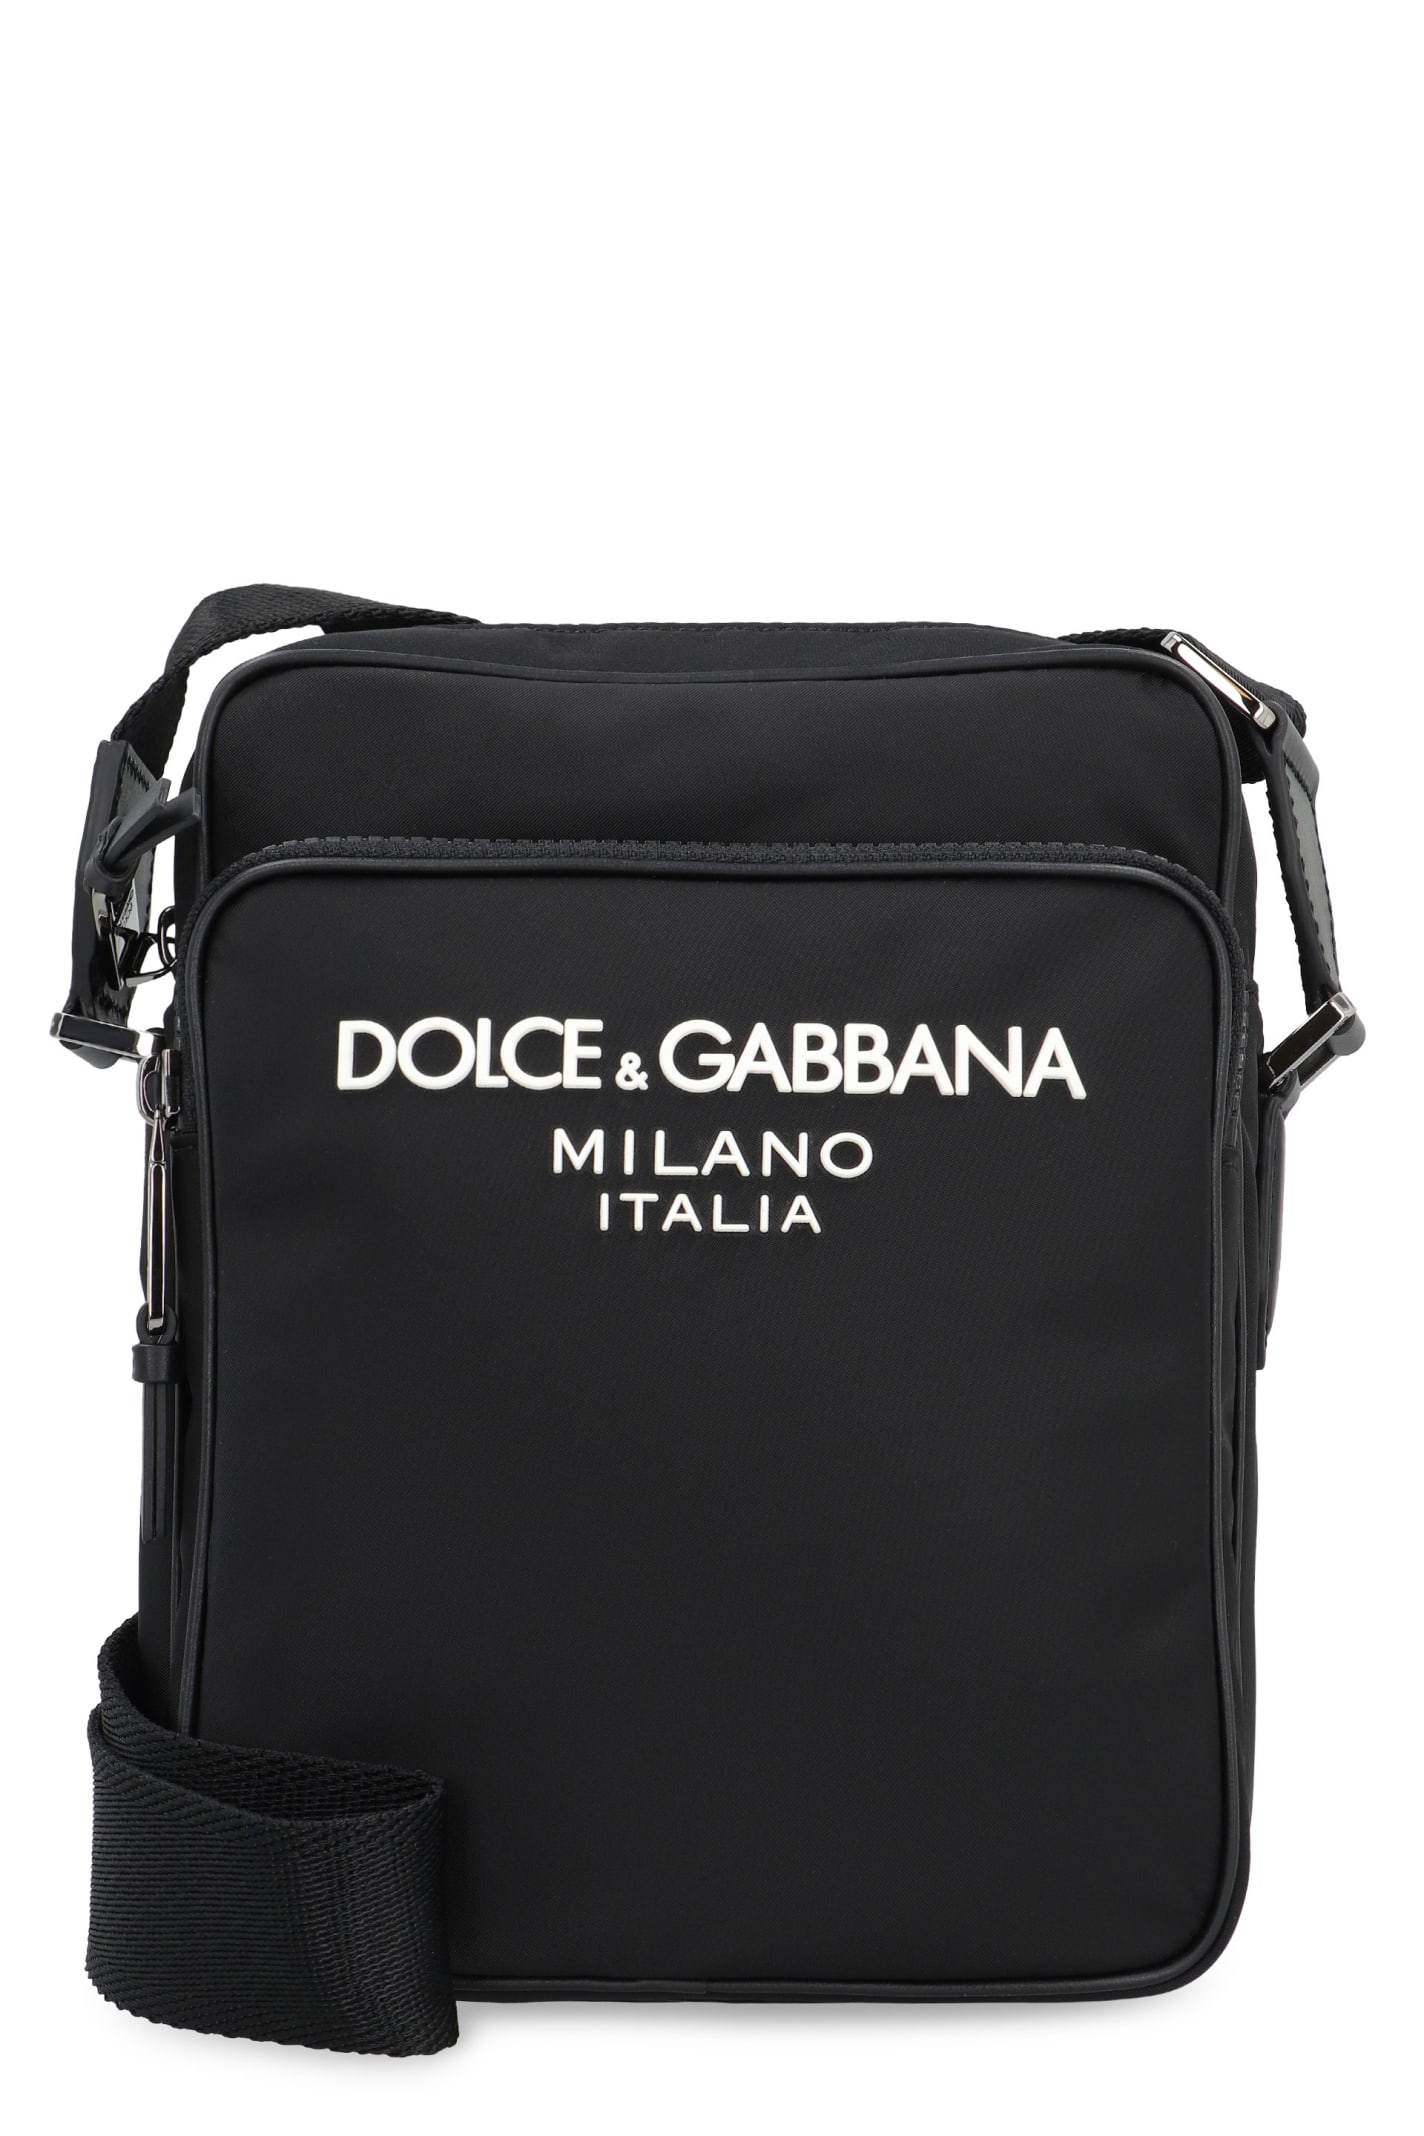 Dolce & Gabbana Nylon Messenger Bag